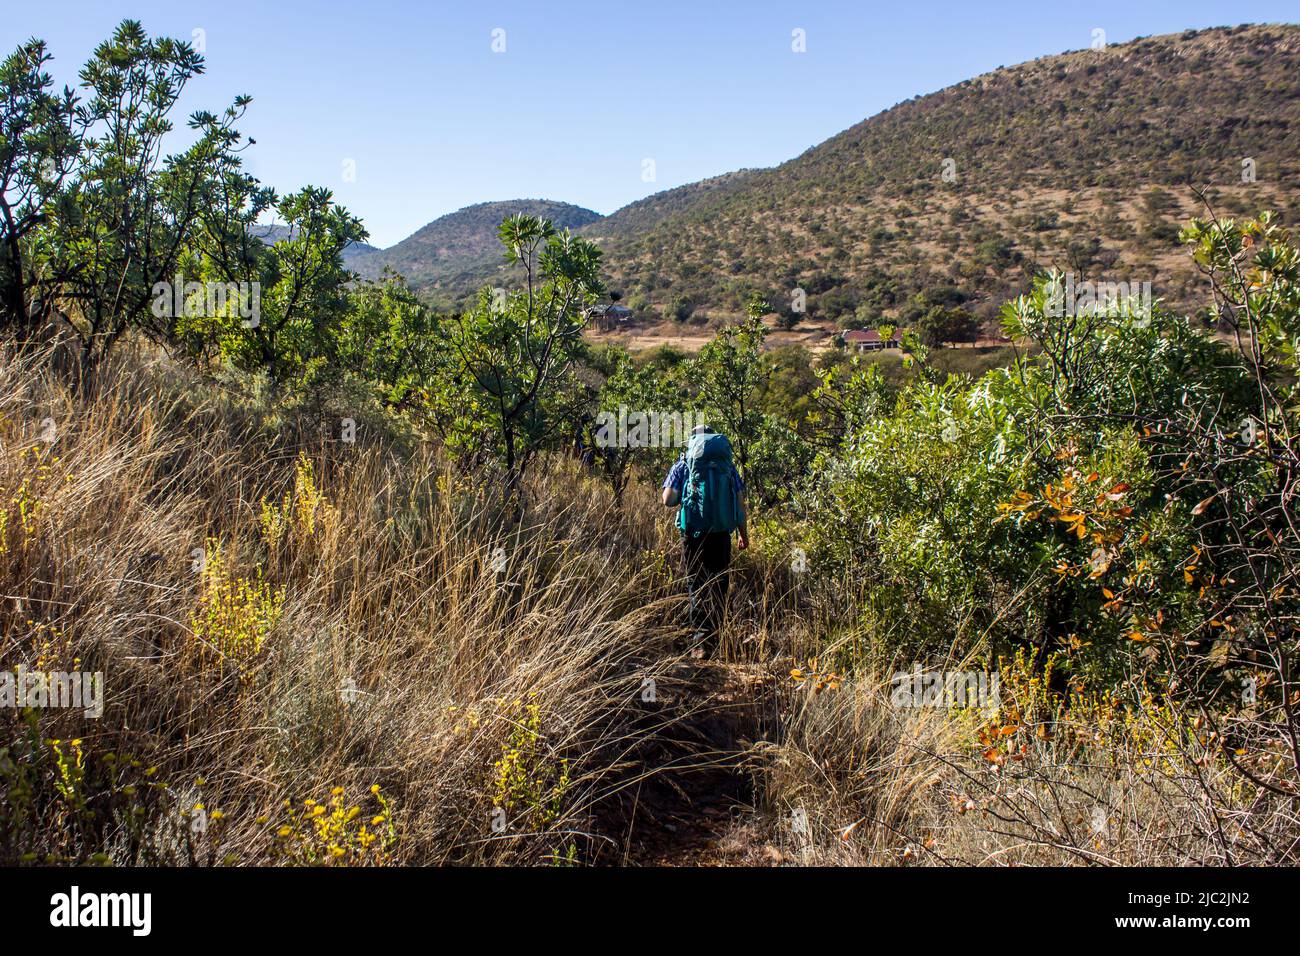 Un excursionista caminando a través de un bosque de proteas comunes en las colinas que forman las crestas circulares de la cúpula de Vredefort, Sudáfrica Foto de stock